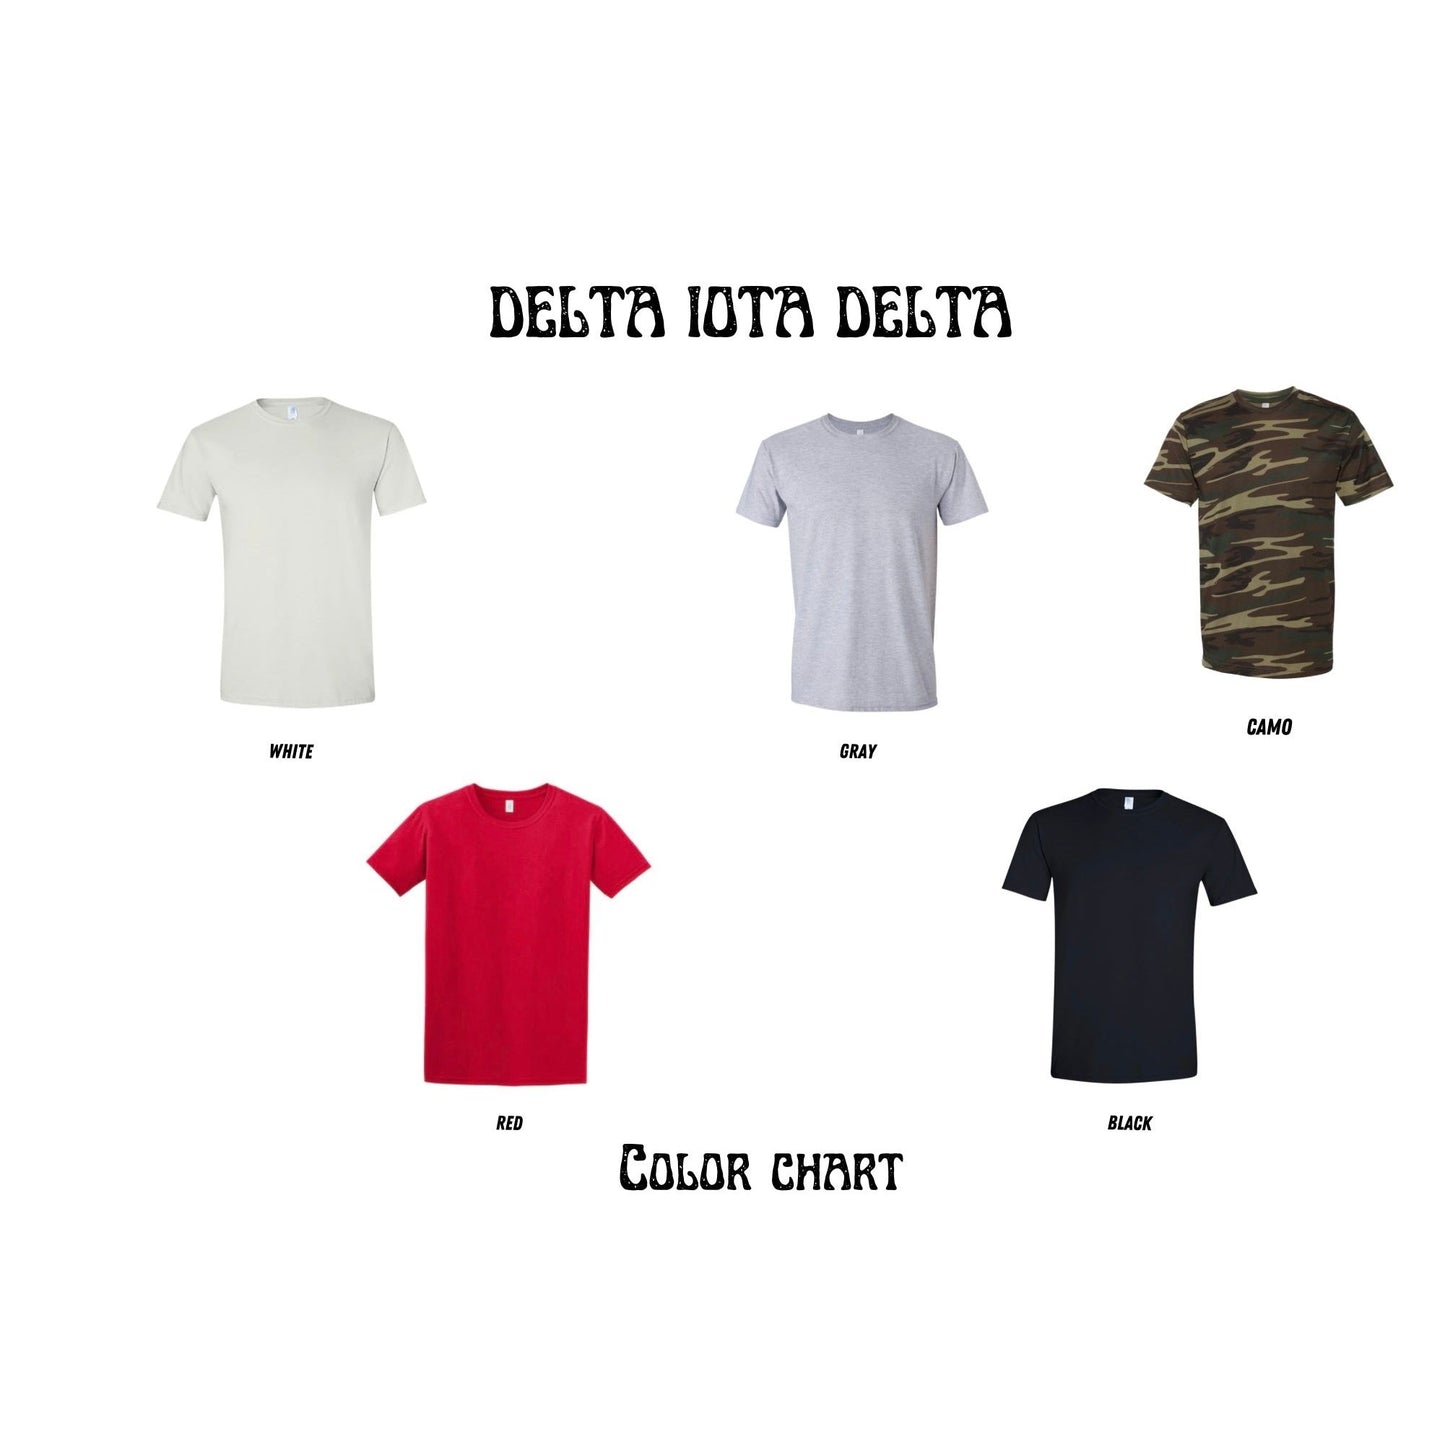 Delta Iota Delta Bling T-shirt